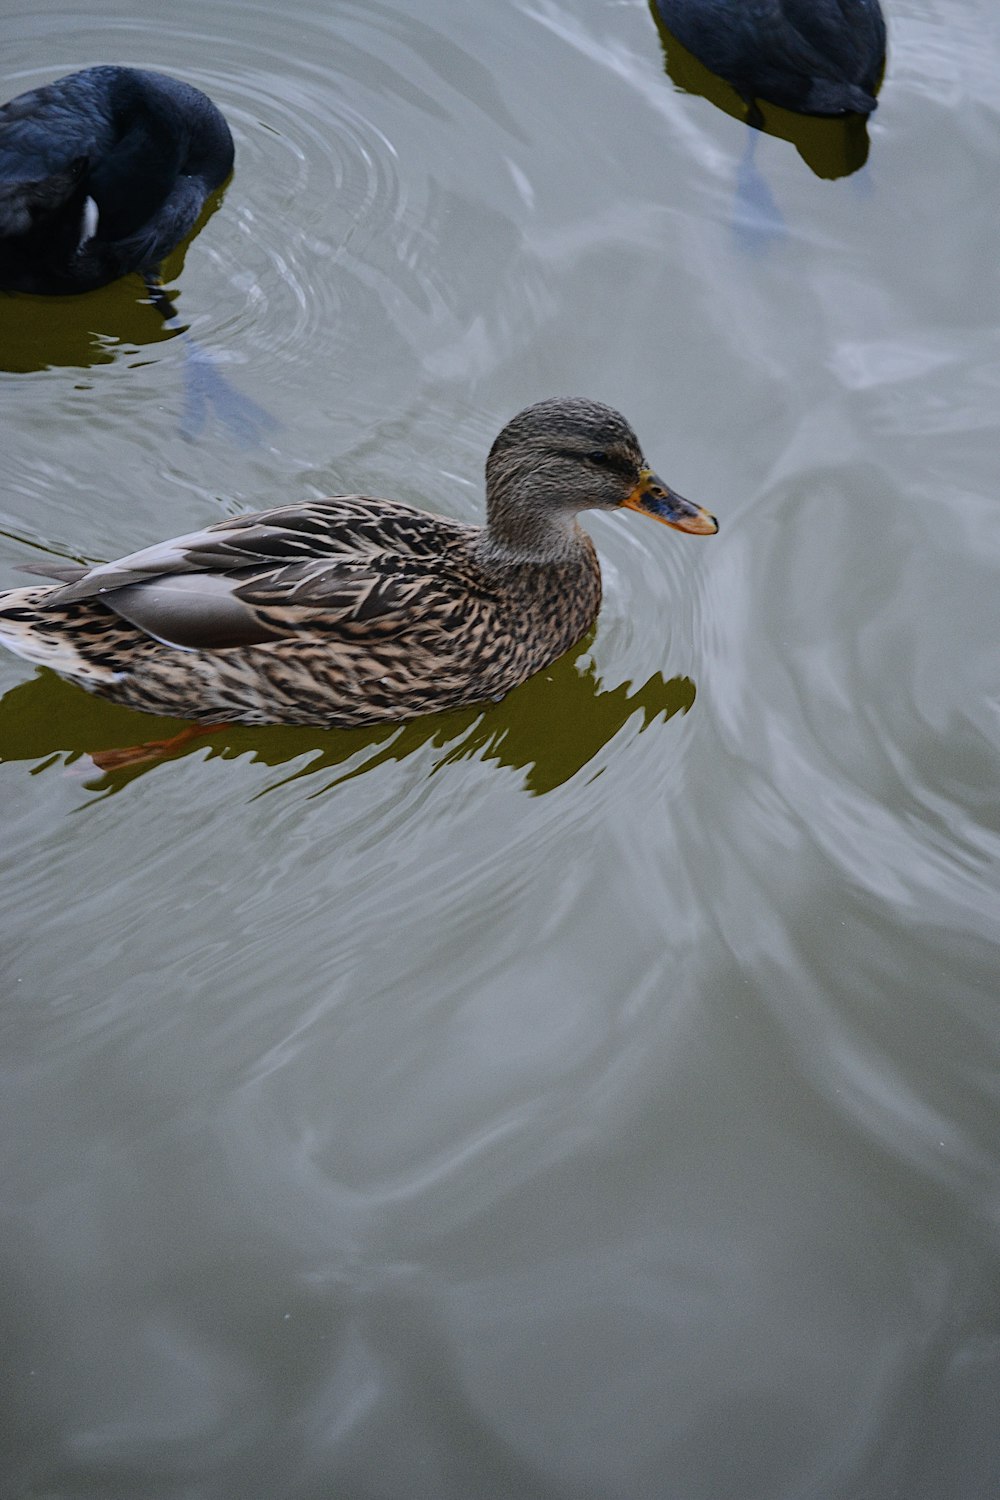 Un canard nageant dans l’eau